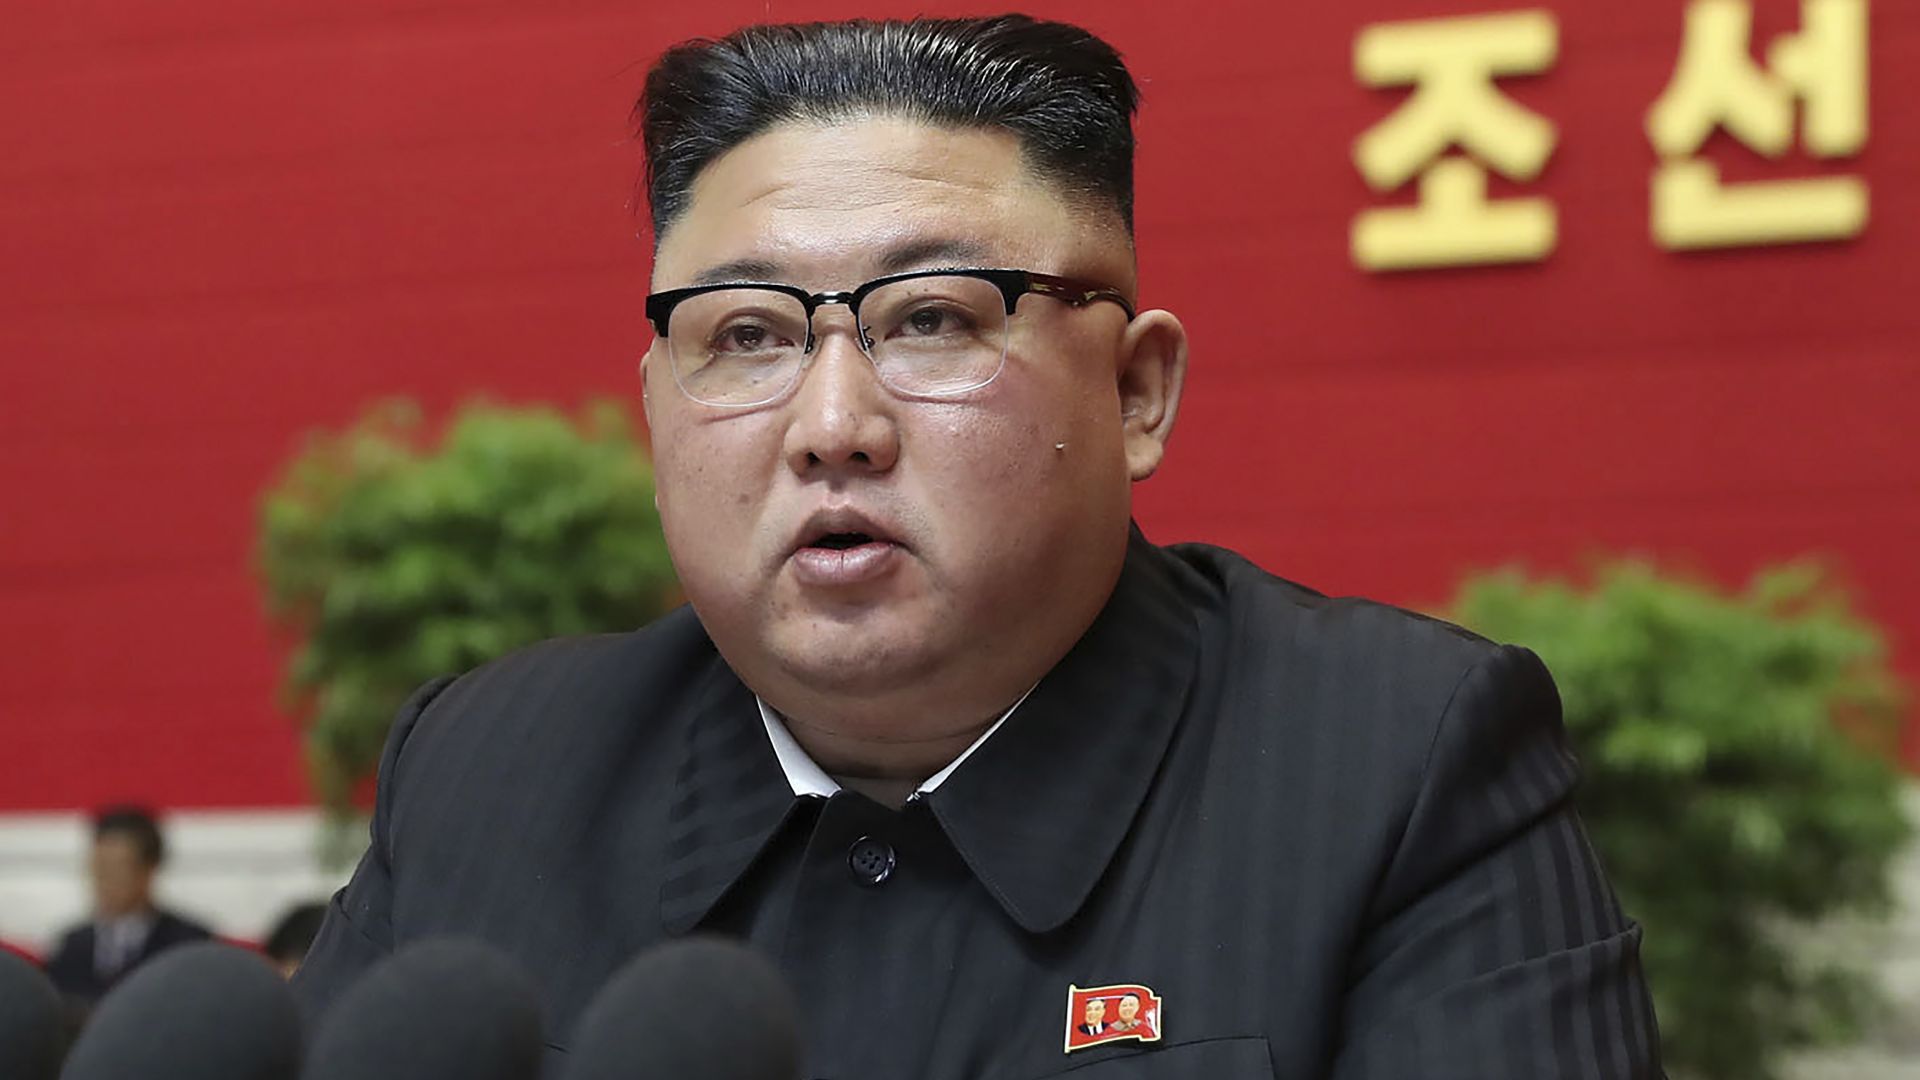 Северна Корея може да се опитва да извлича плутоний